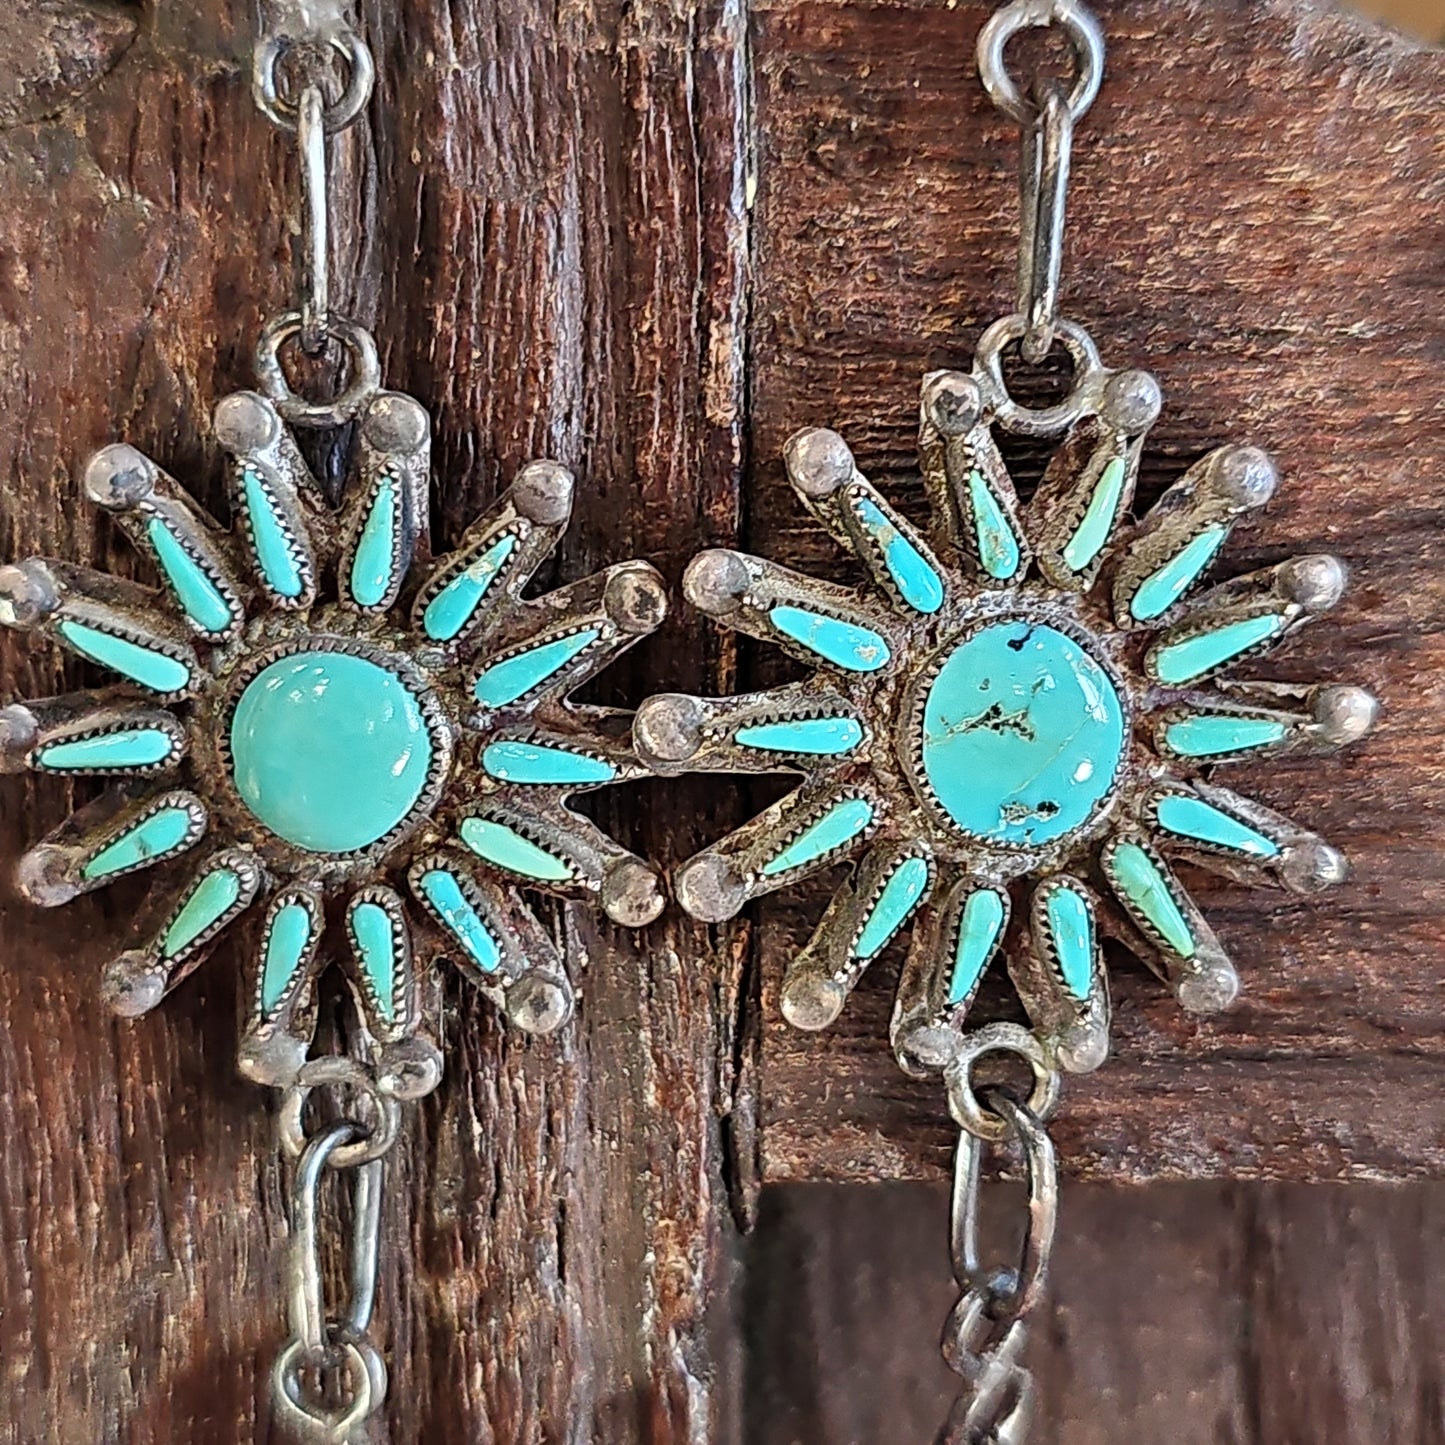 Zuni needlepoint turquoise necklace